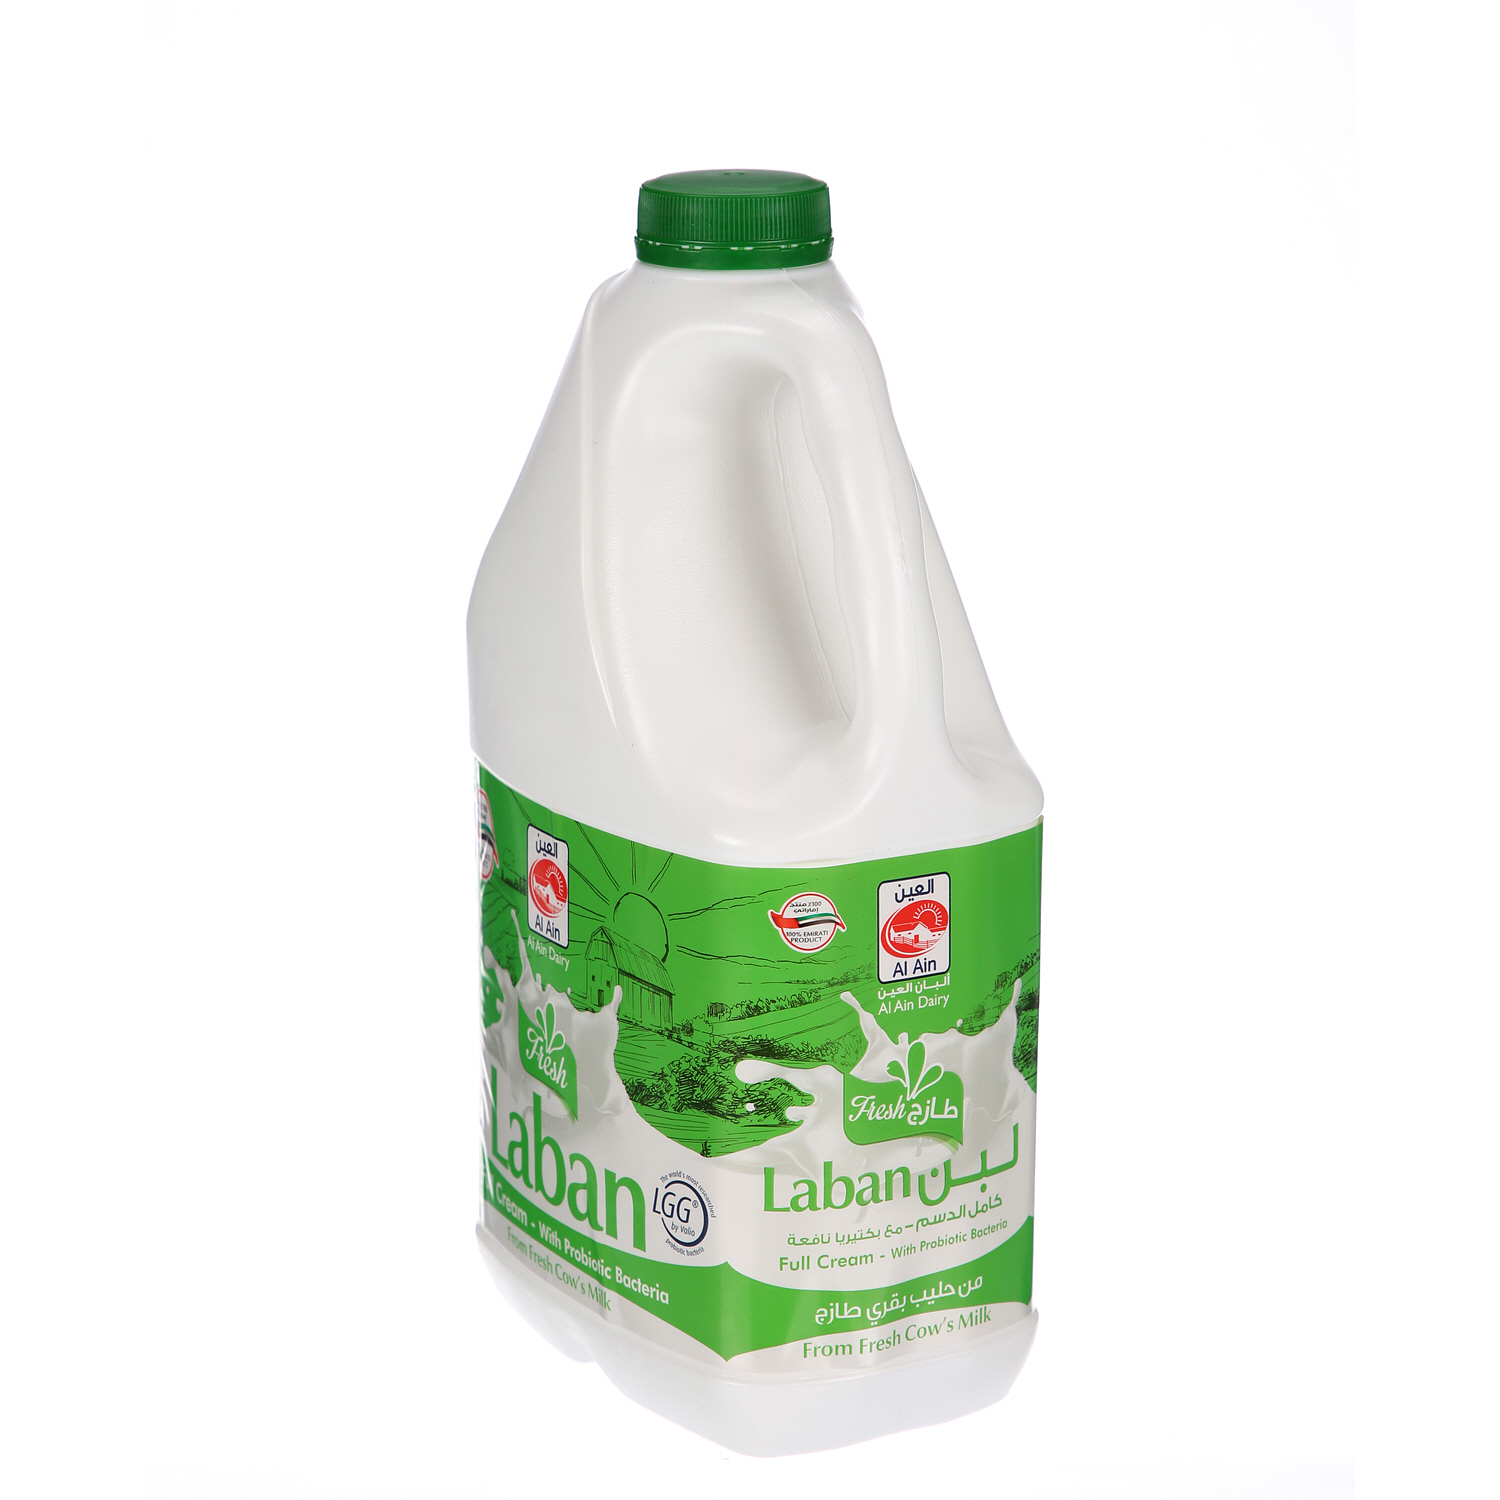 Al Ain Fresh Laban with Gefilac Full Cream 2 L